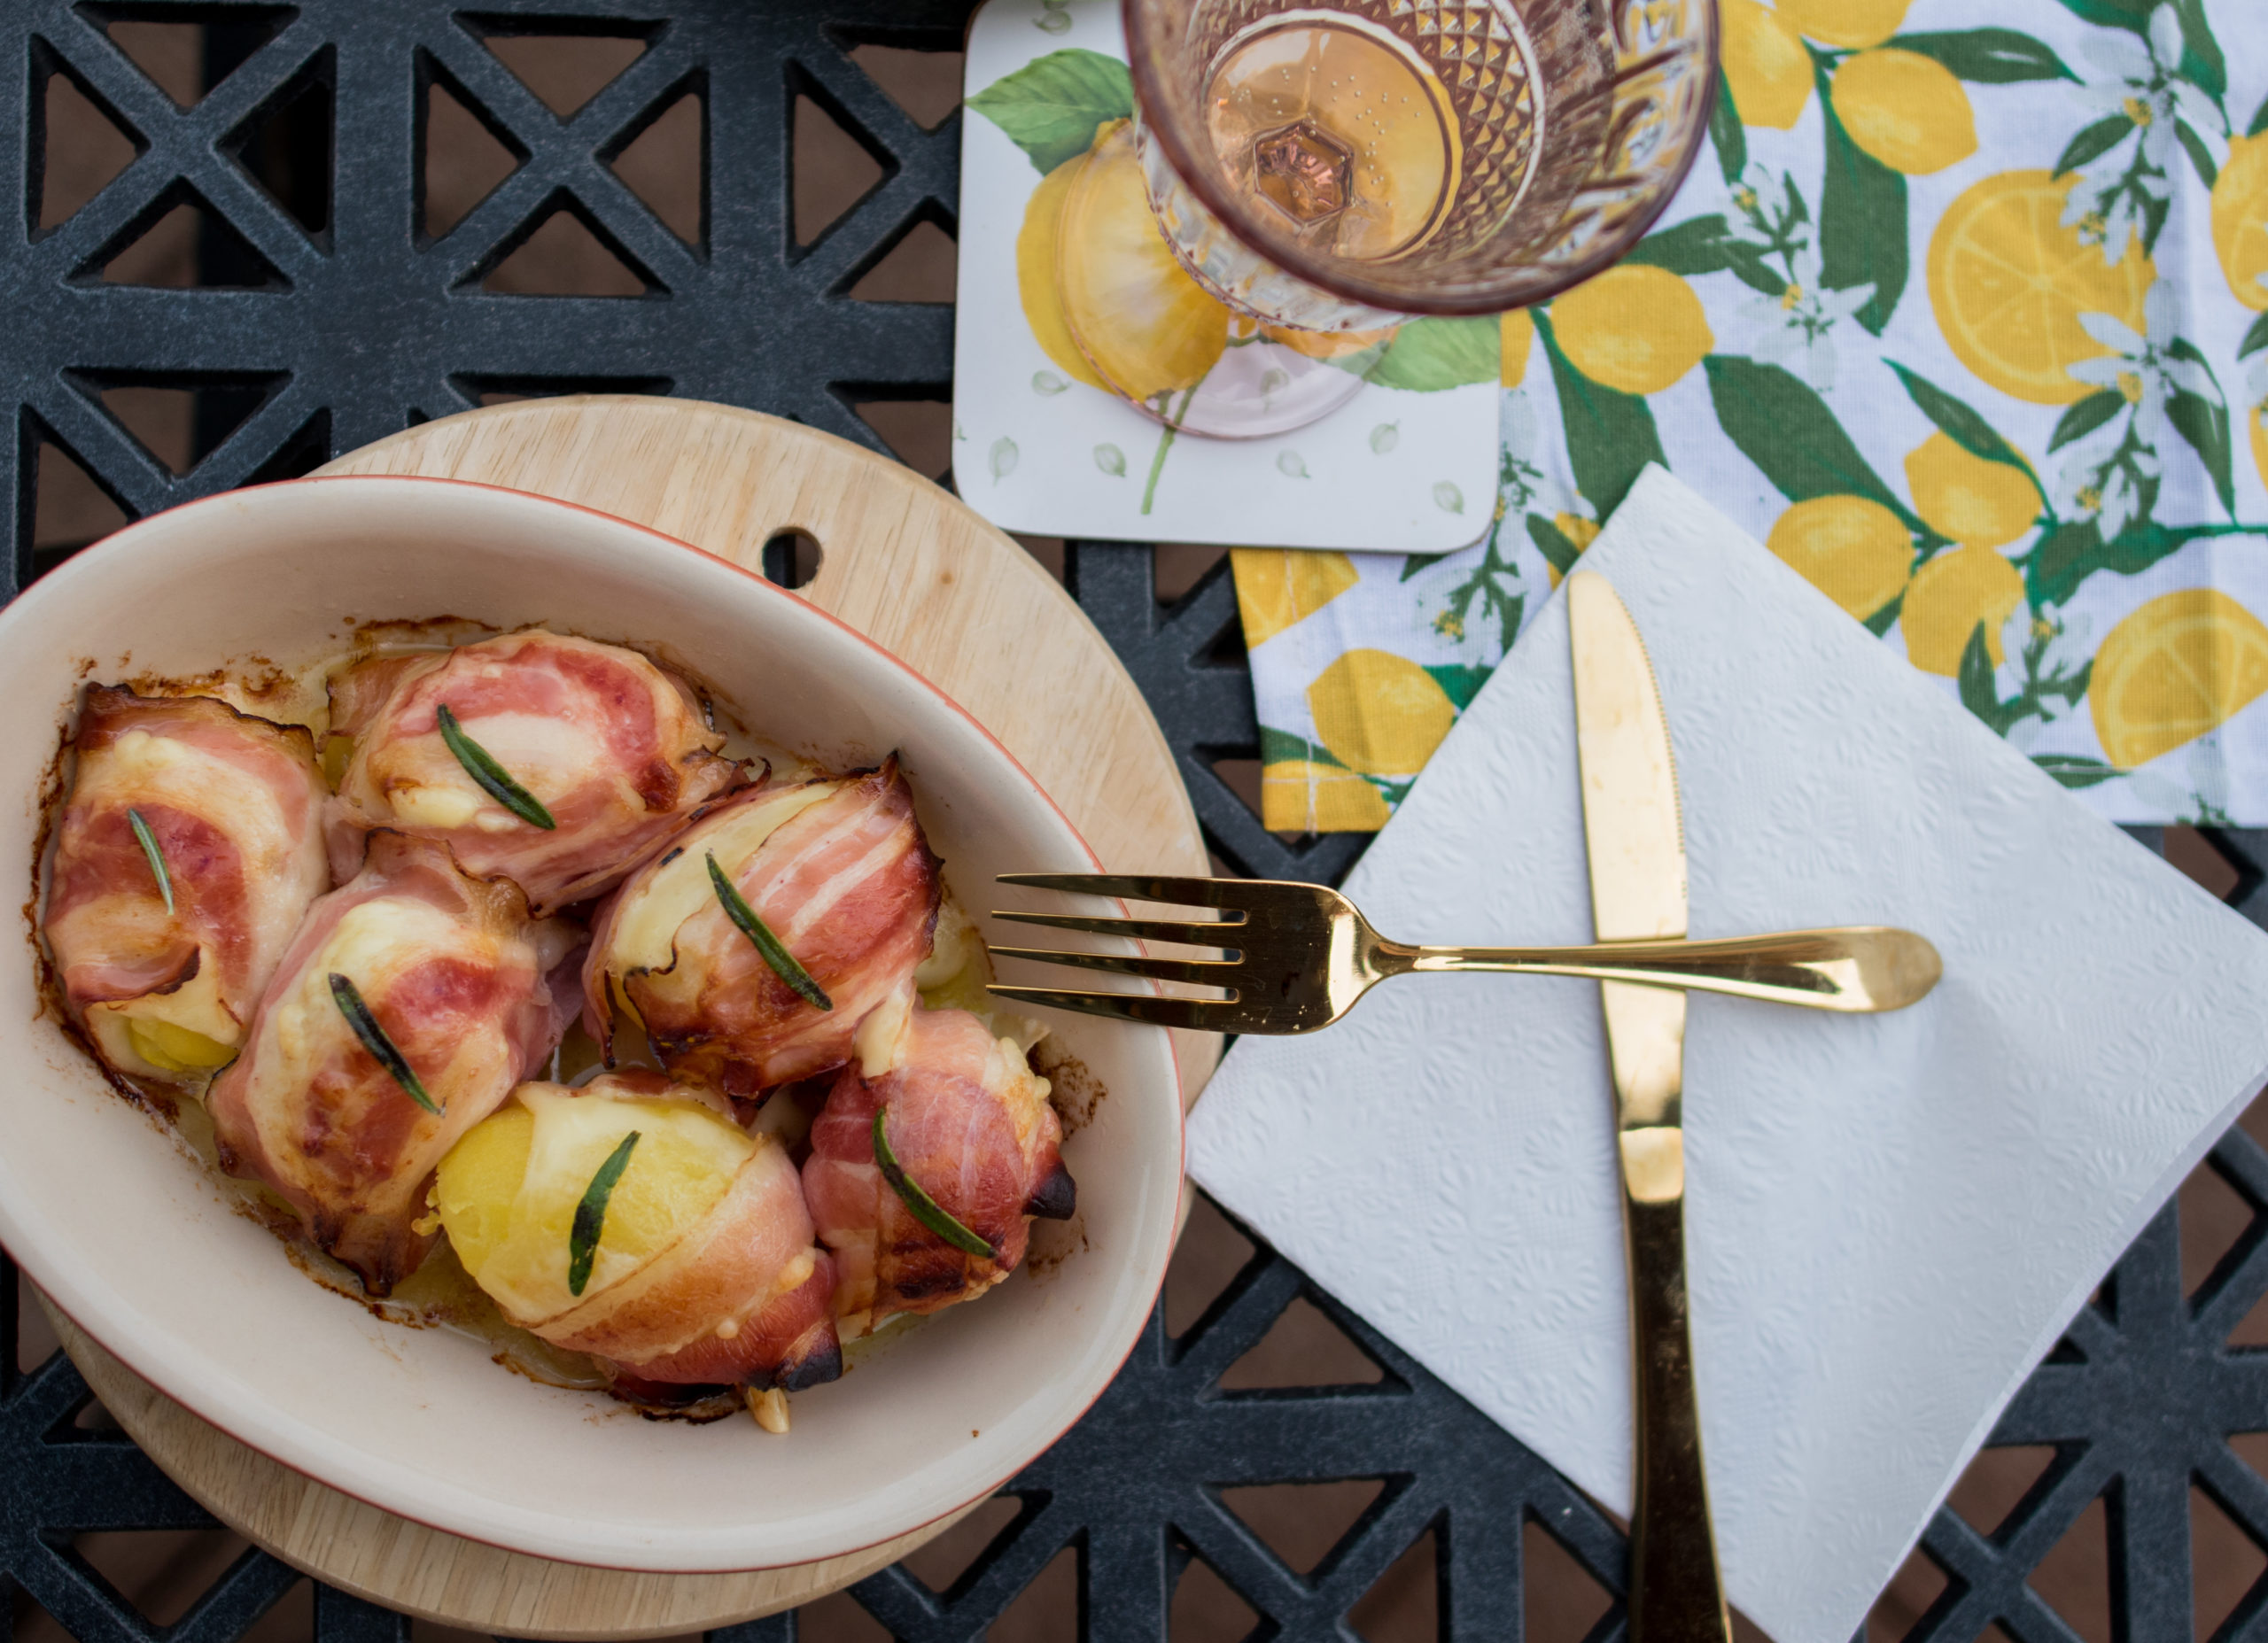 Kúsky zemiakov so syrom a slaninou – skvelá príloha alebo menšie hlavné jedlo?